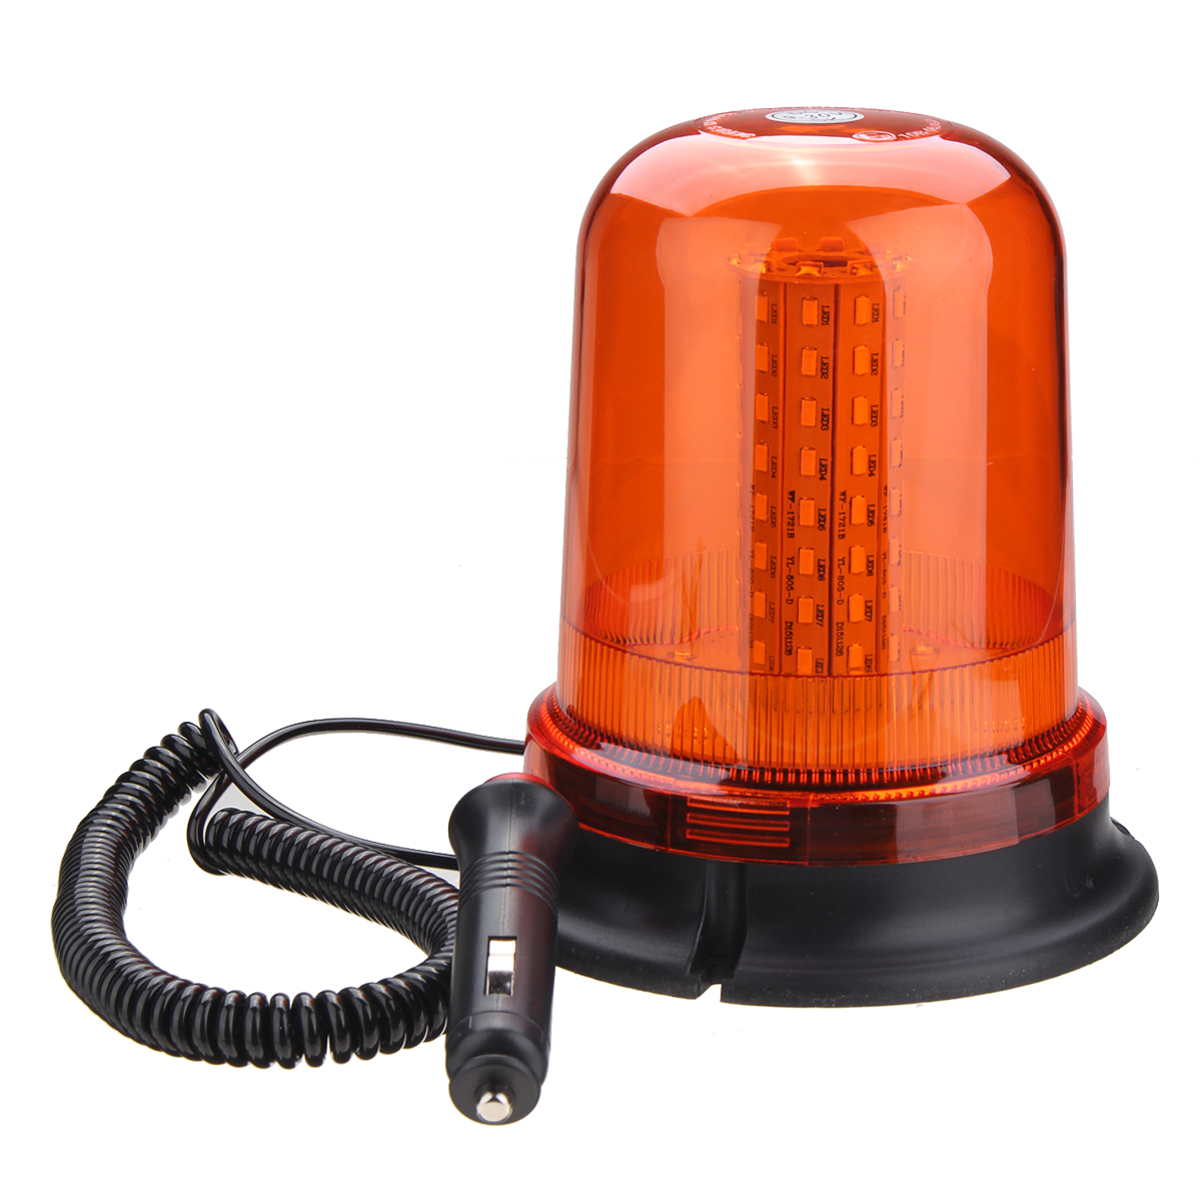 

12V-24V Flashing Beacon Warning Signal Light 80 LED Magnetic Mount Rotating Amber